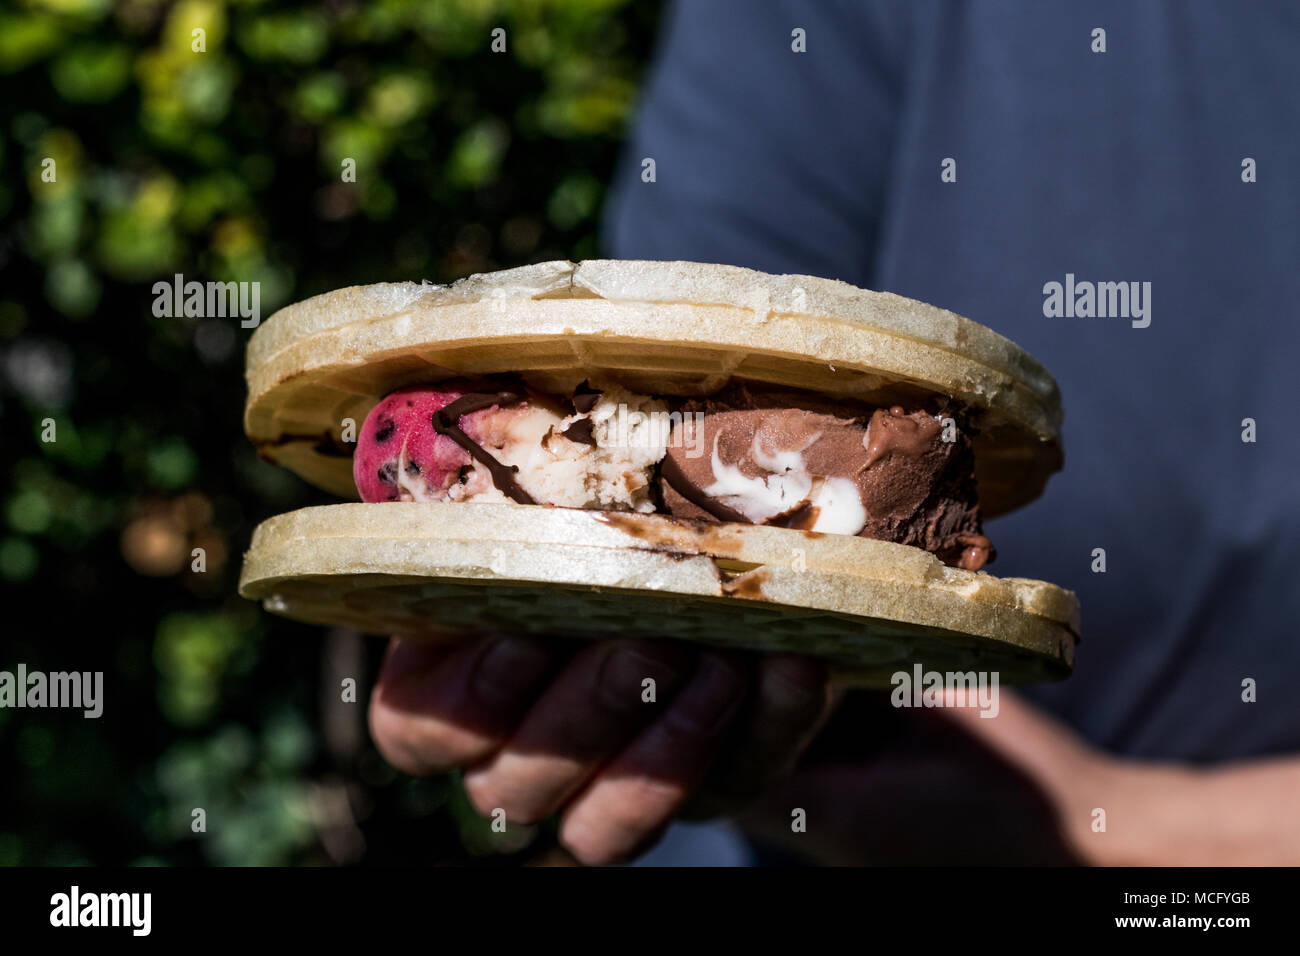 Halva ice cream sandwich / Kagit helva arasi dondurma. Dessert Concept. Stock Photo